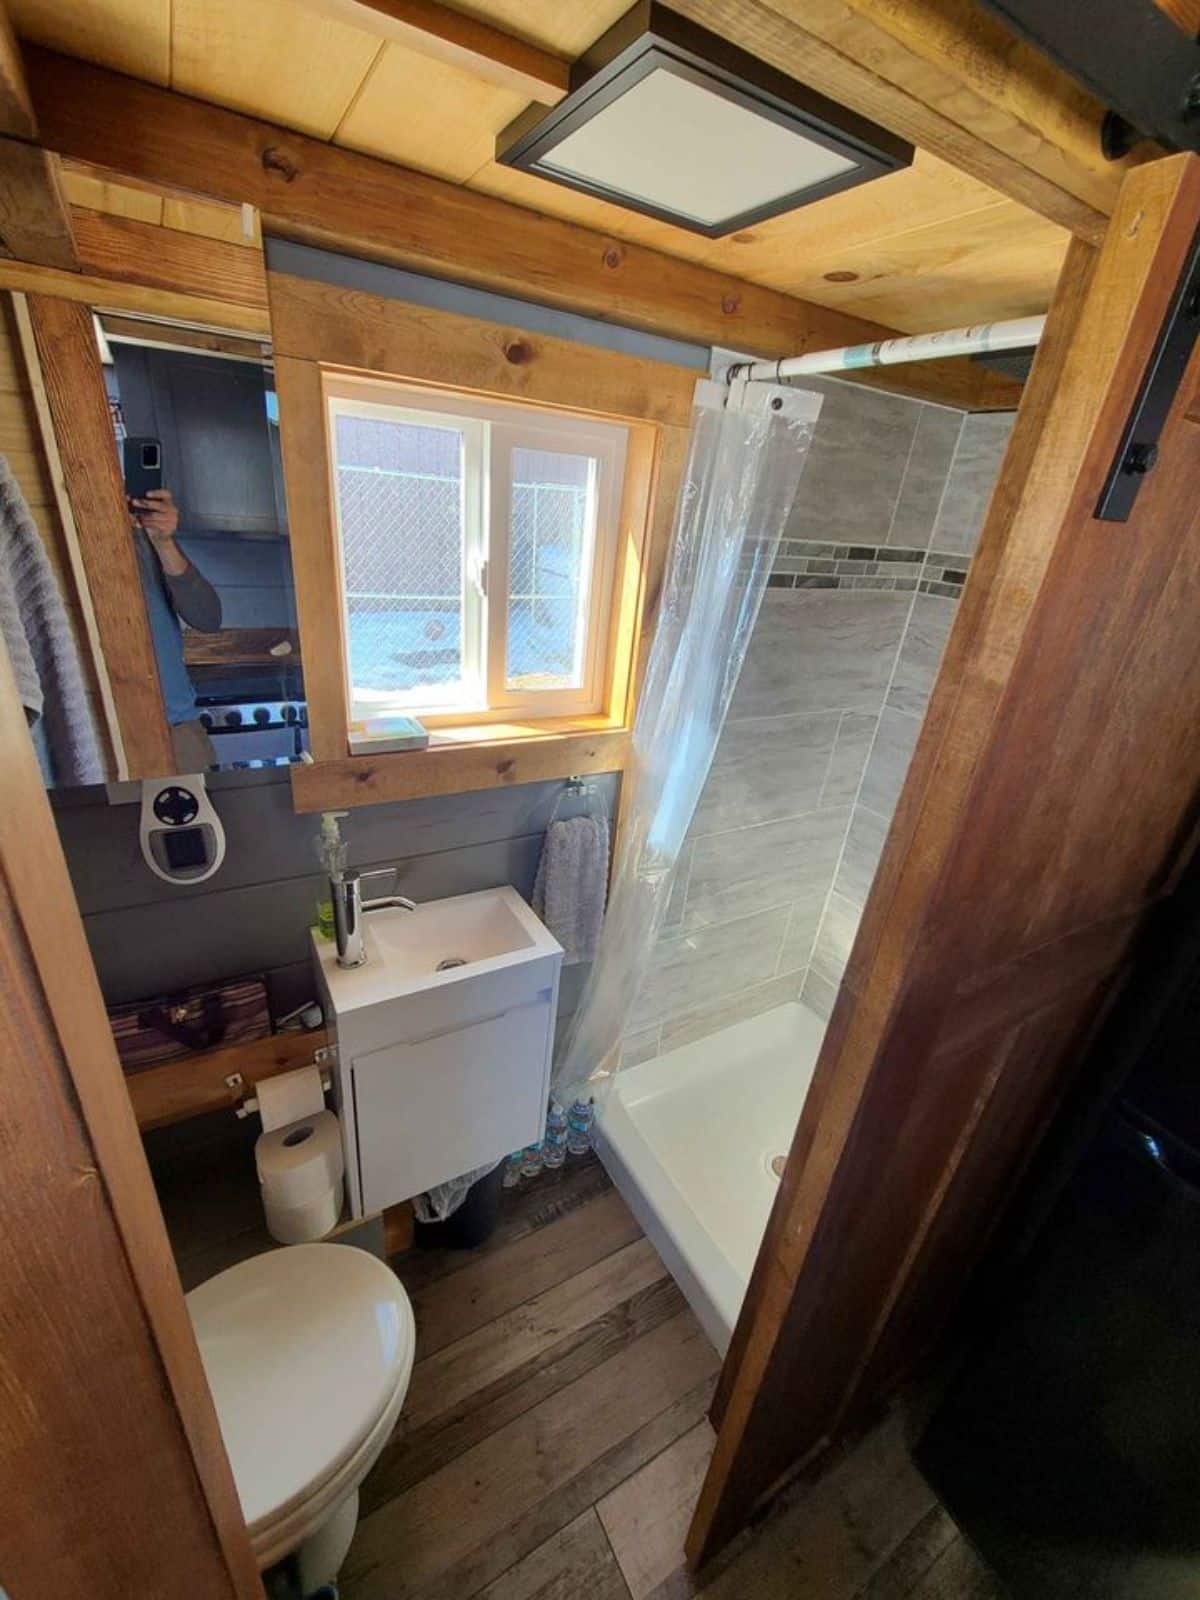 Bathroom has composting toilet, sink with vanity